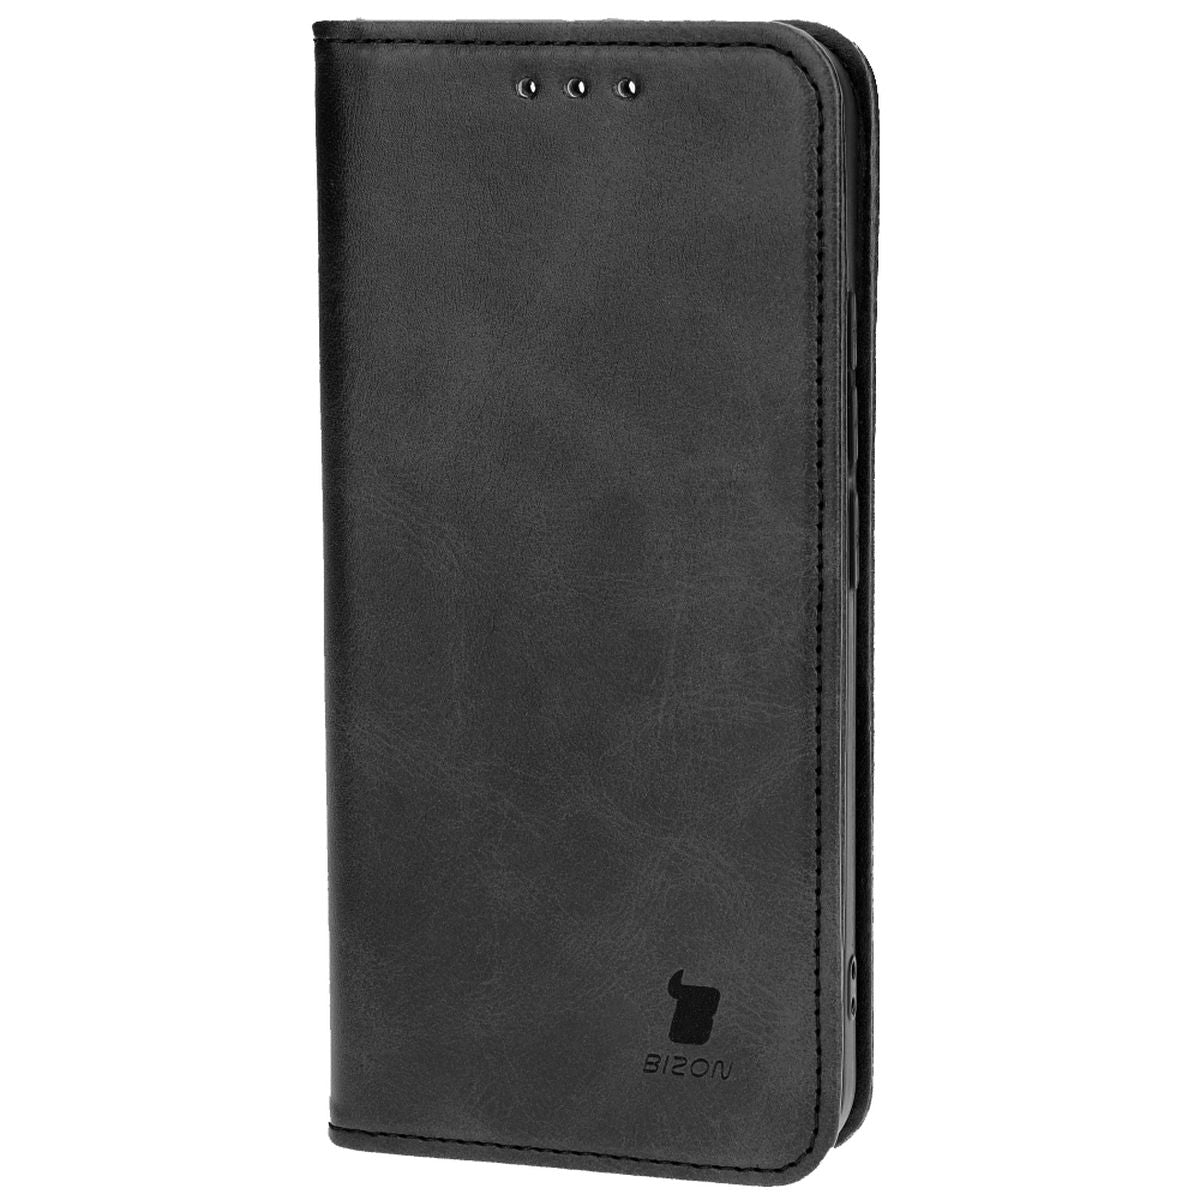 Schutzhülle für Xiaomi 14, Bizon Case Pocket Pro, Schwarz